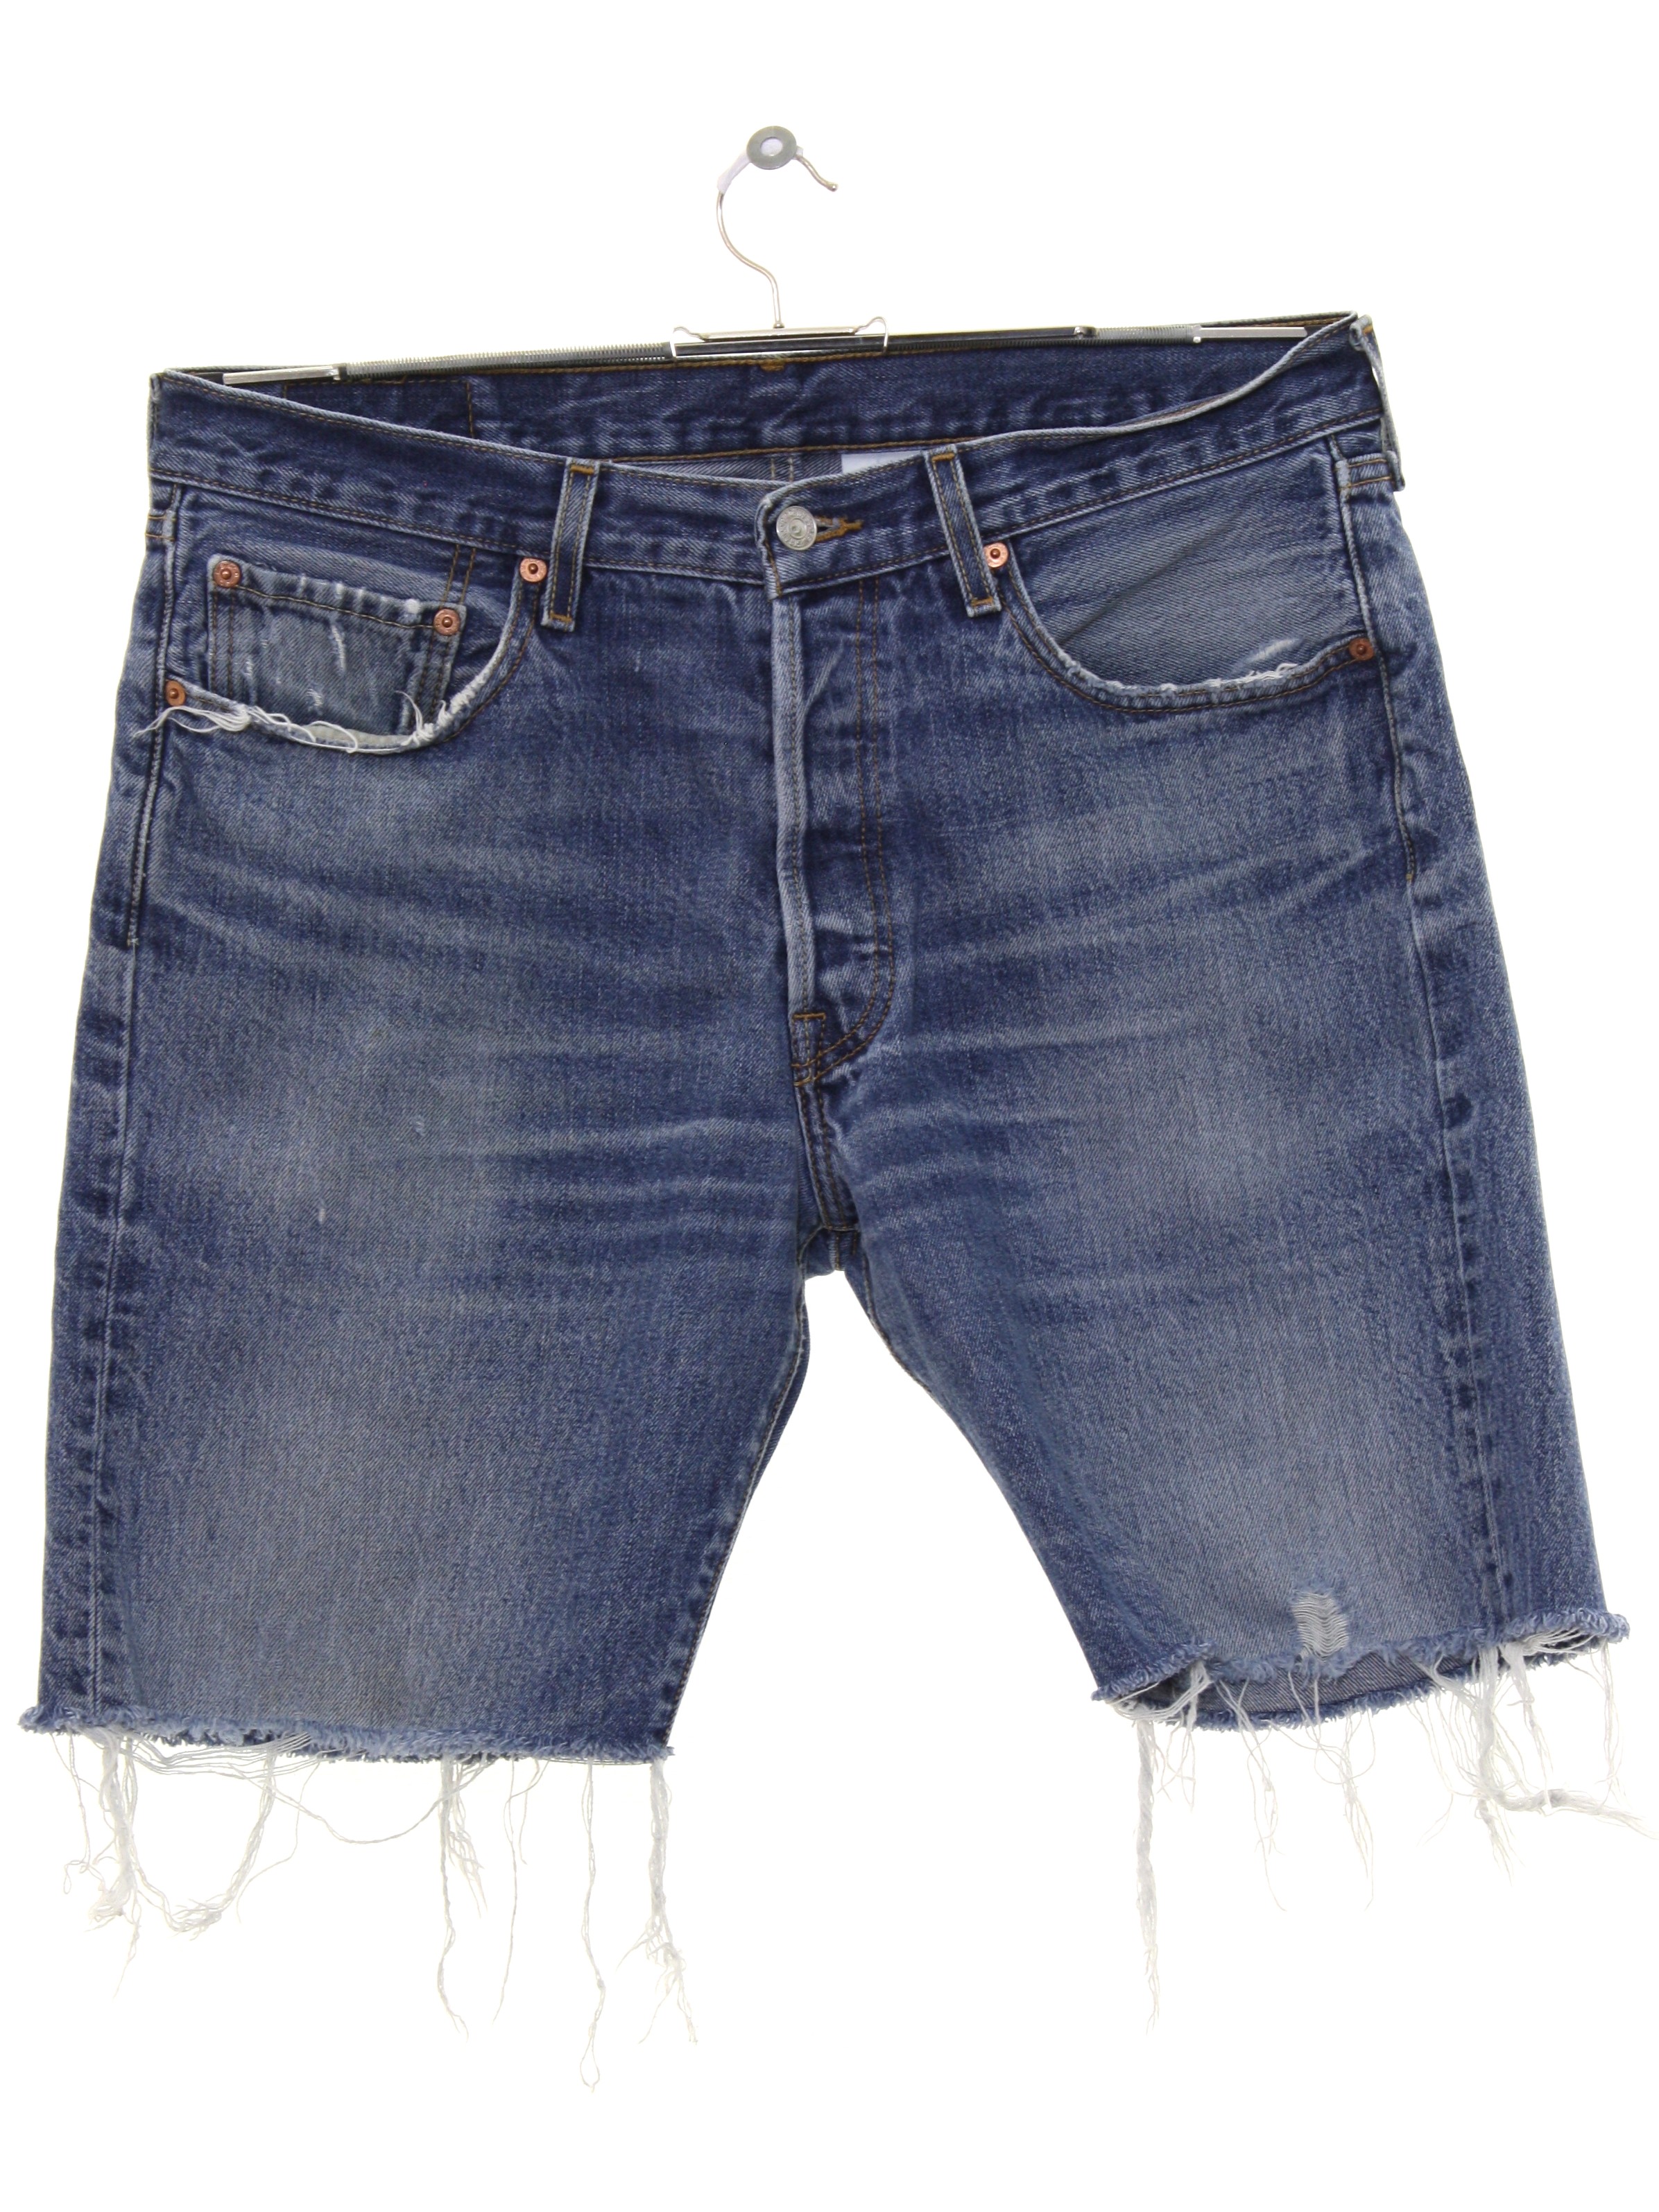 levis 501 shorts vintage